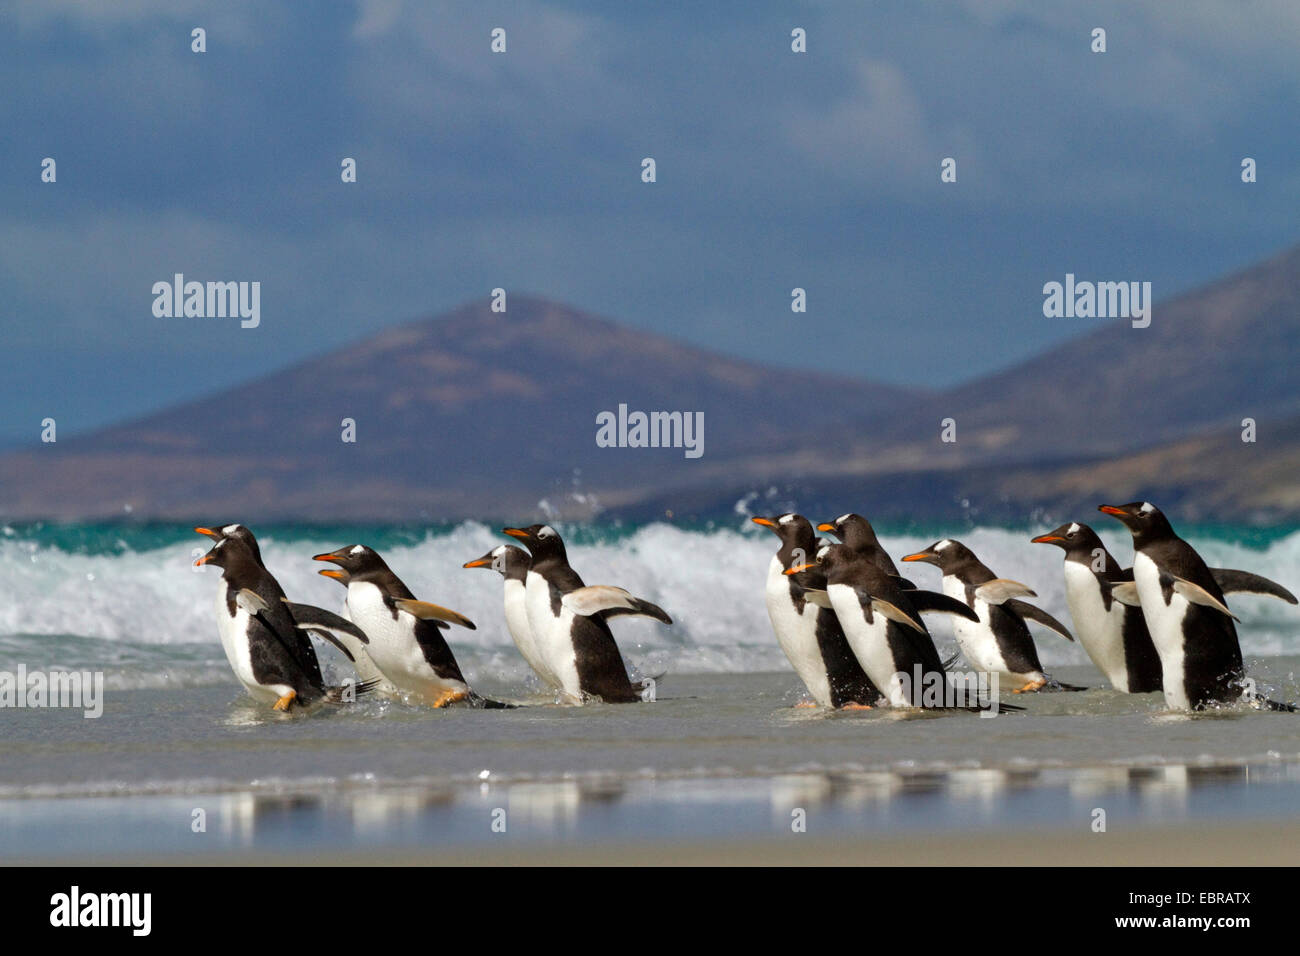 Pingüinos papúa (Pygoscelis papua), grupo de entrar corriendo en el mar, la Antártida, Islas Malvinas, Isla de sirenas Foto de stock